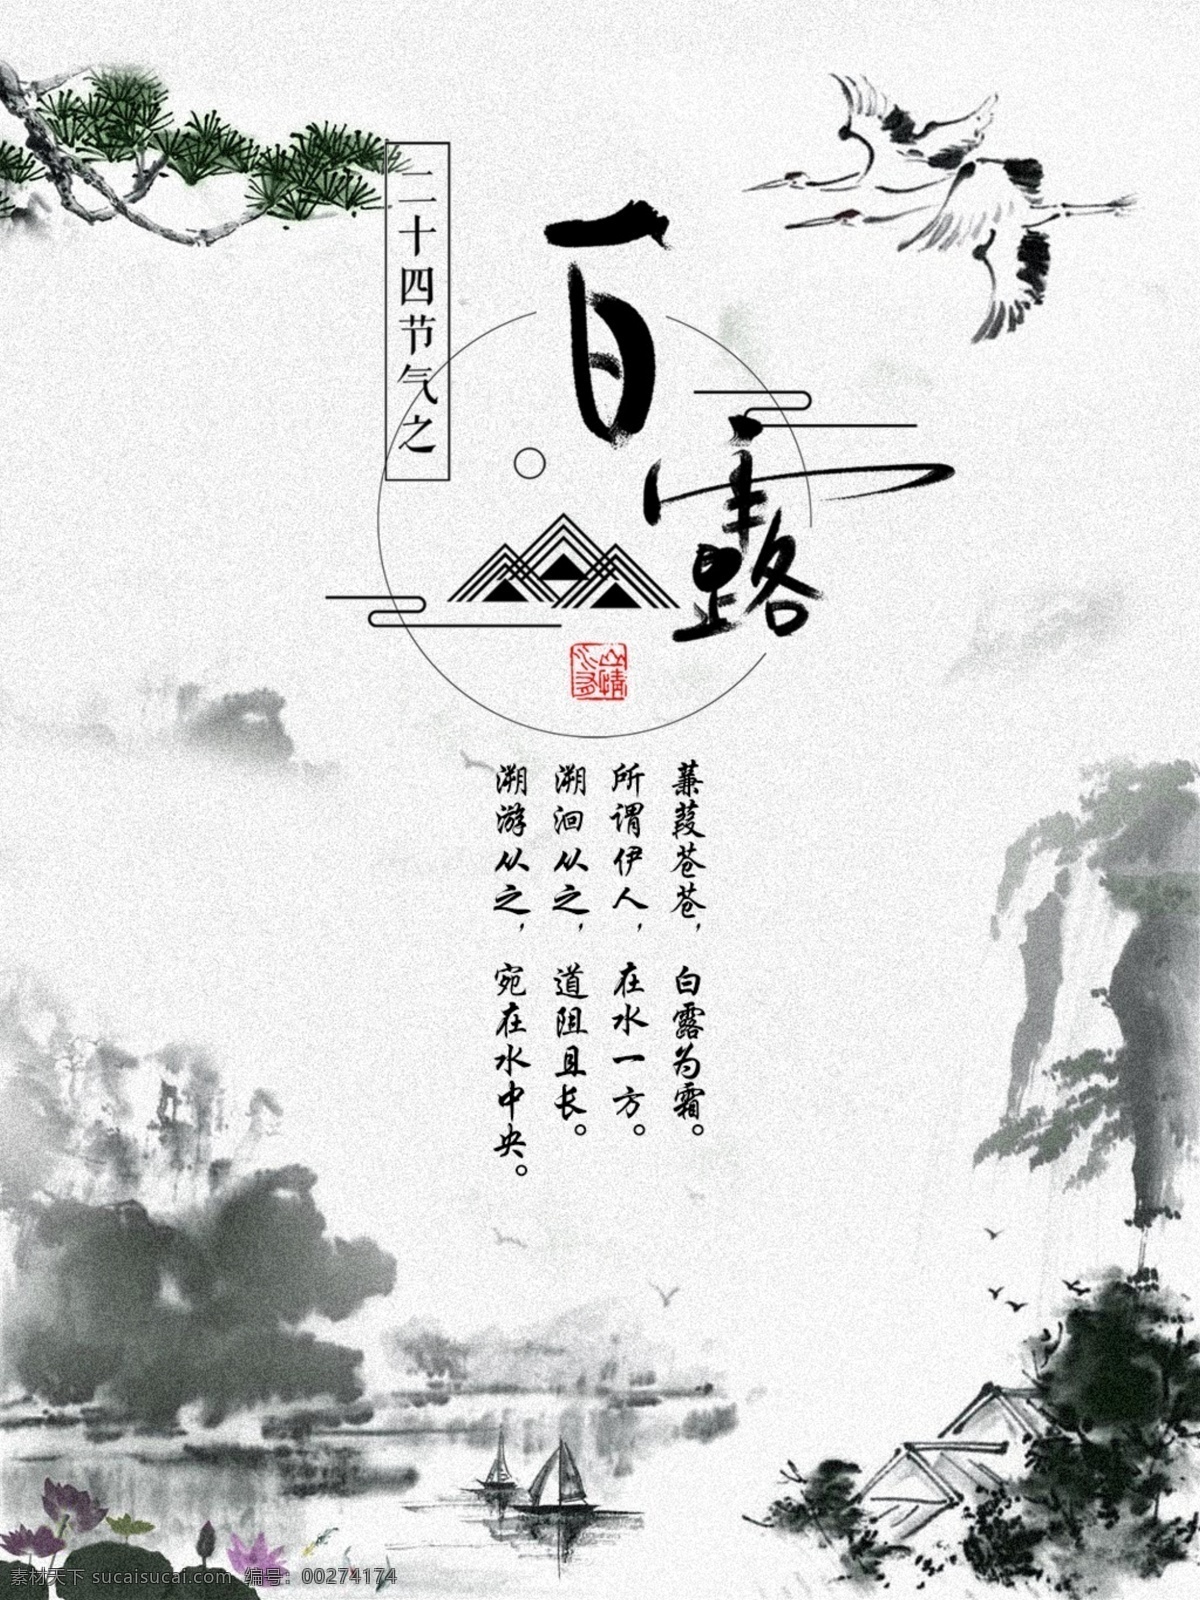 二十四节气 白露 中国 风山 水墨画 创意 中国风 山水 墨画 海报